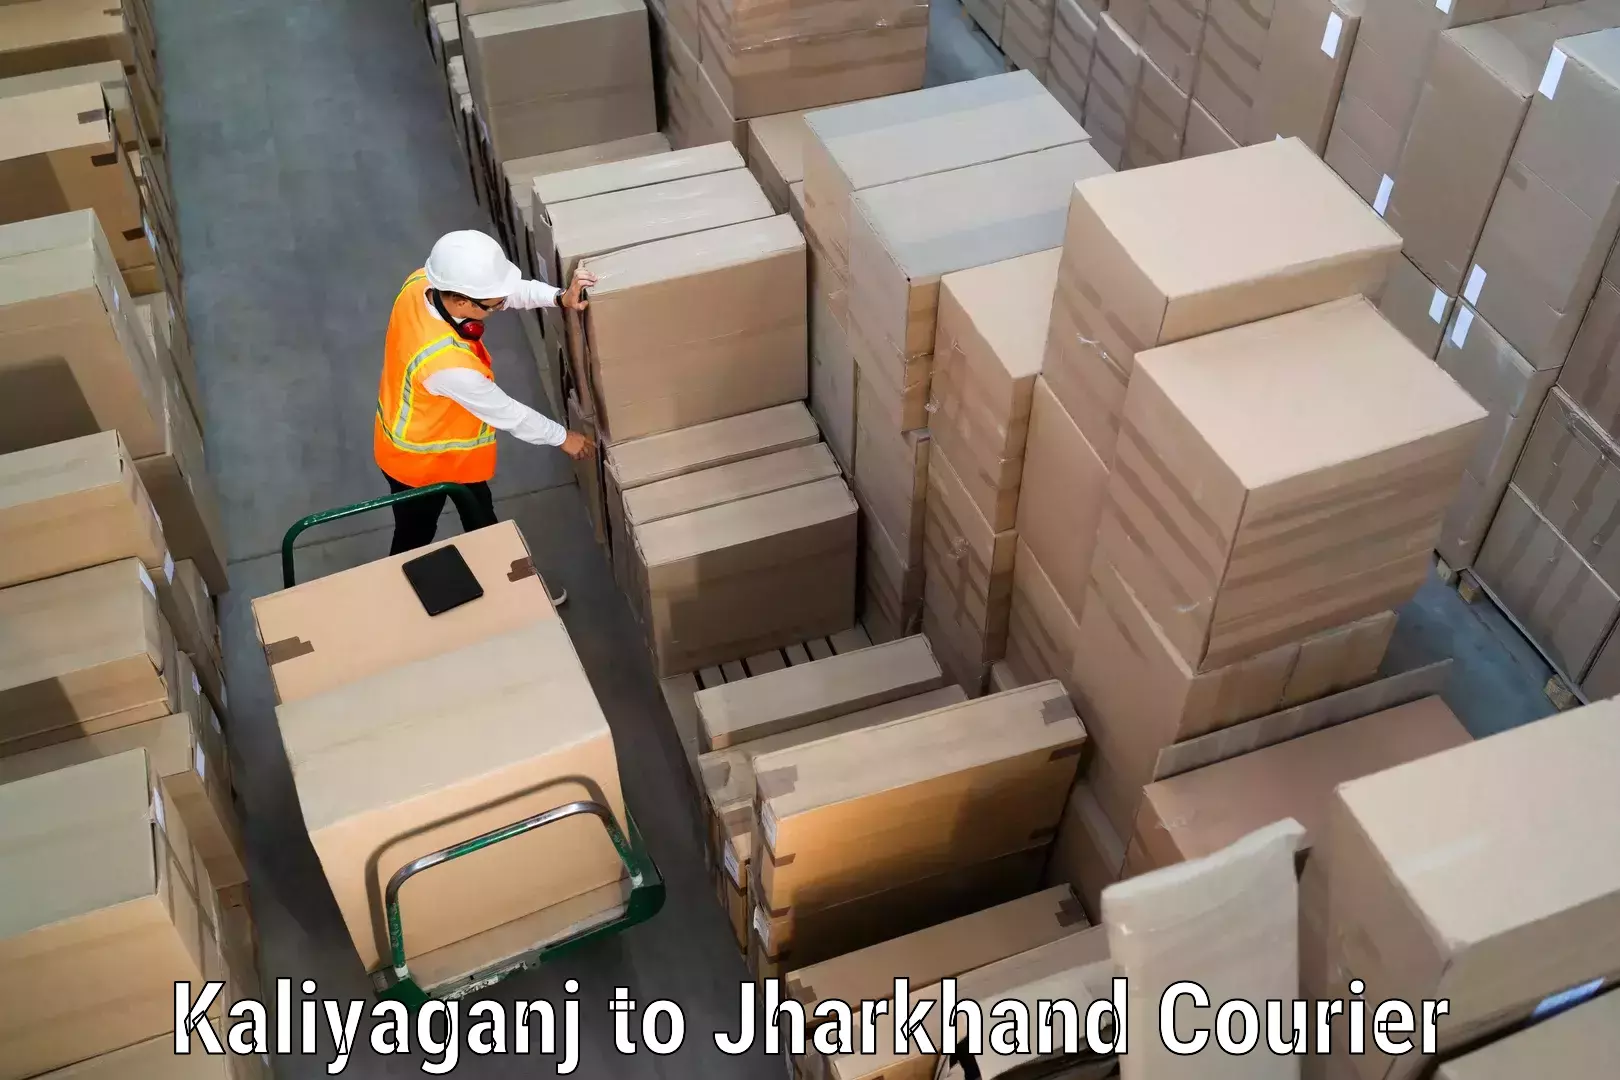 Professional courier services in Kaliyaganj to Panki Palamu